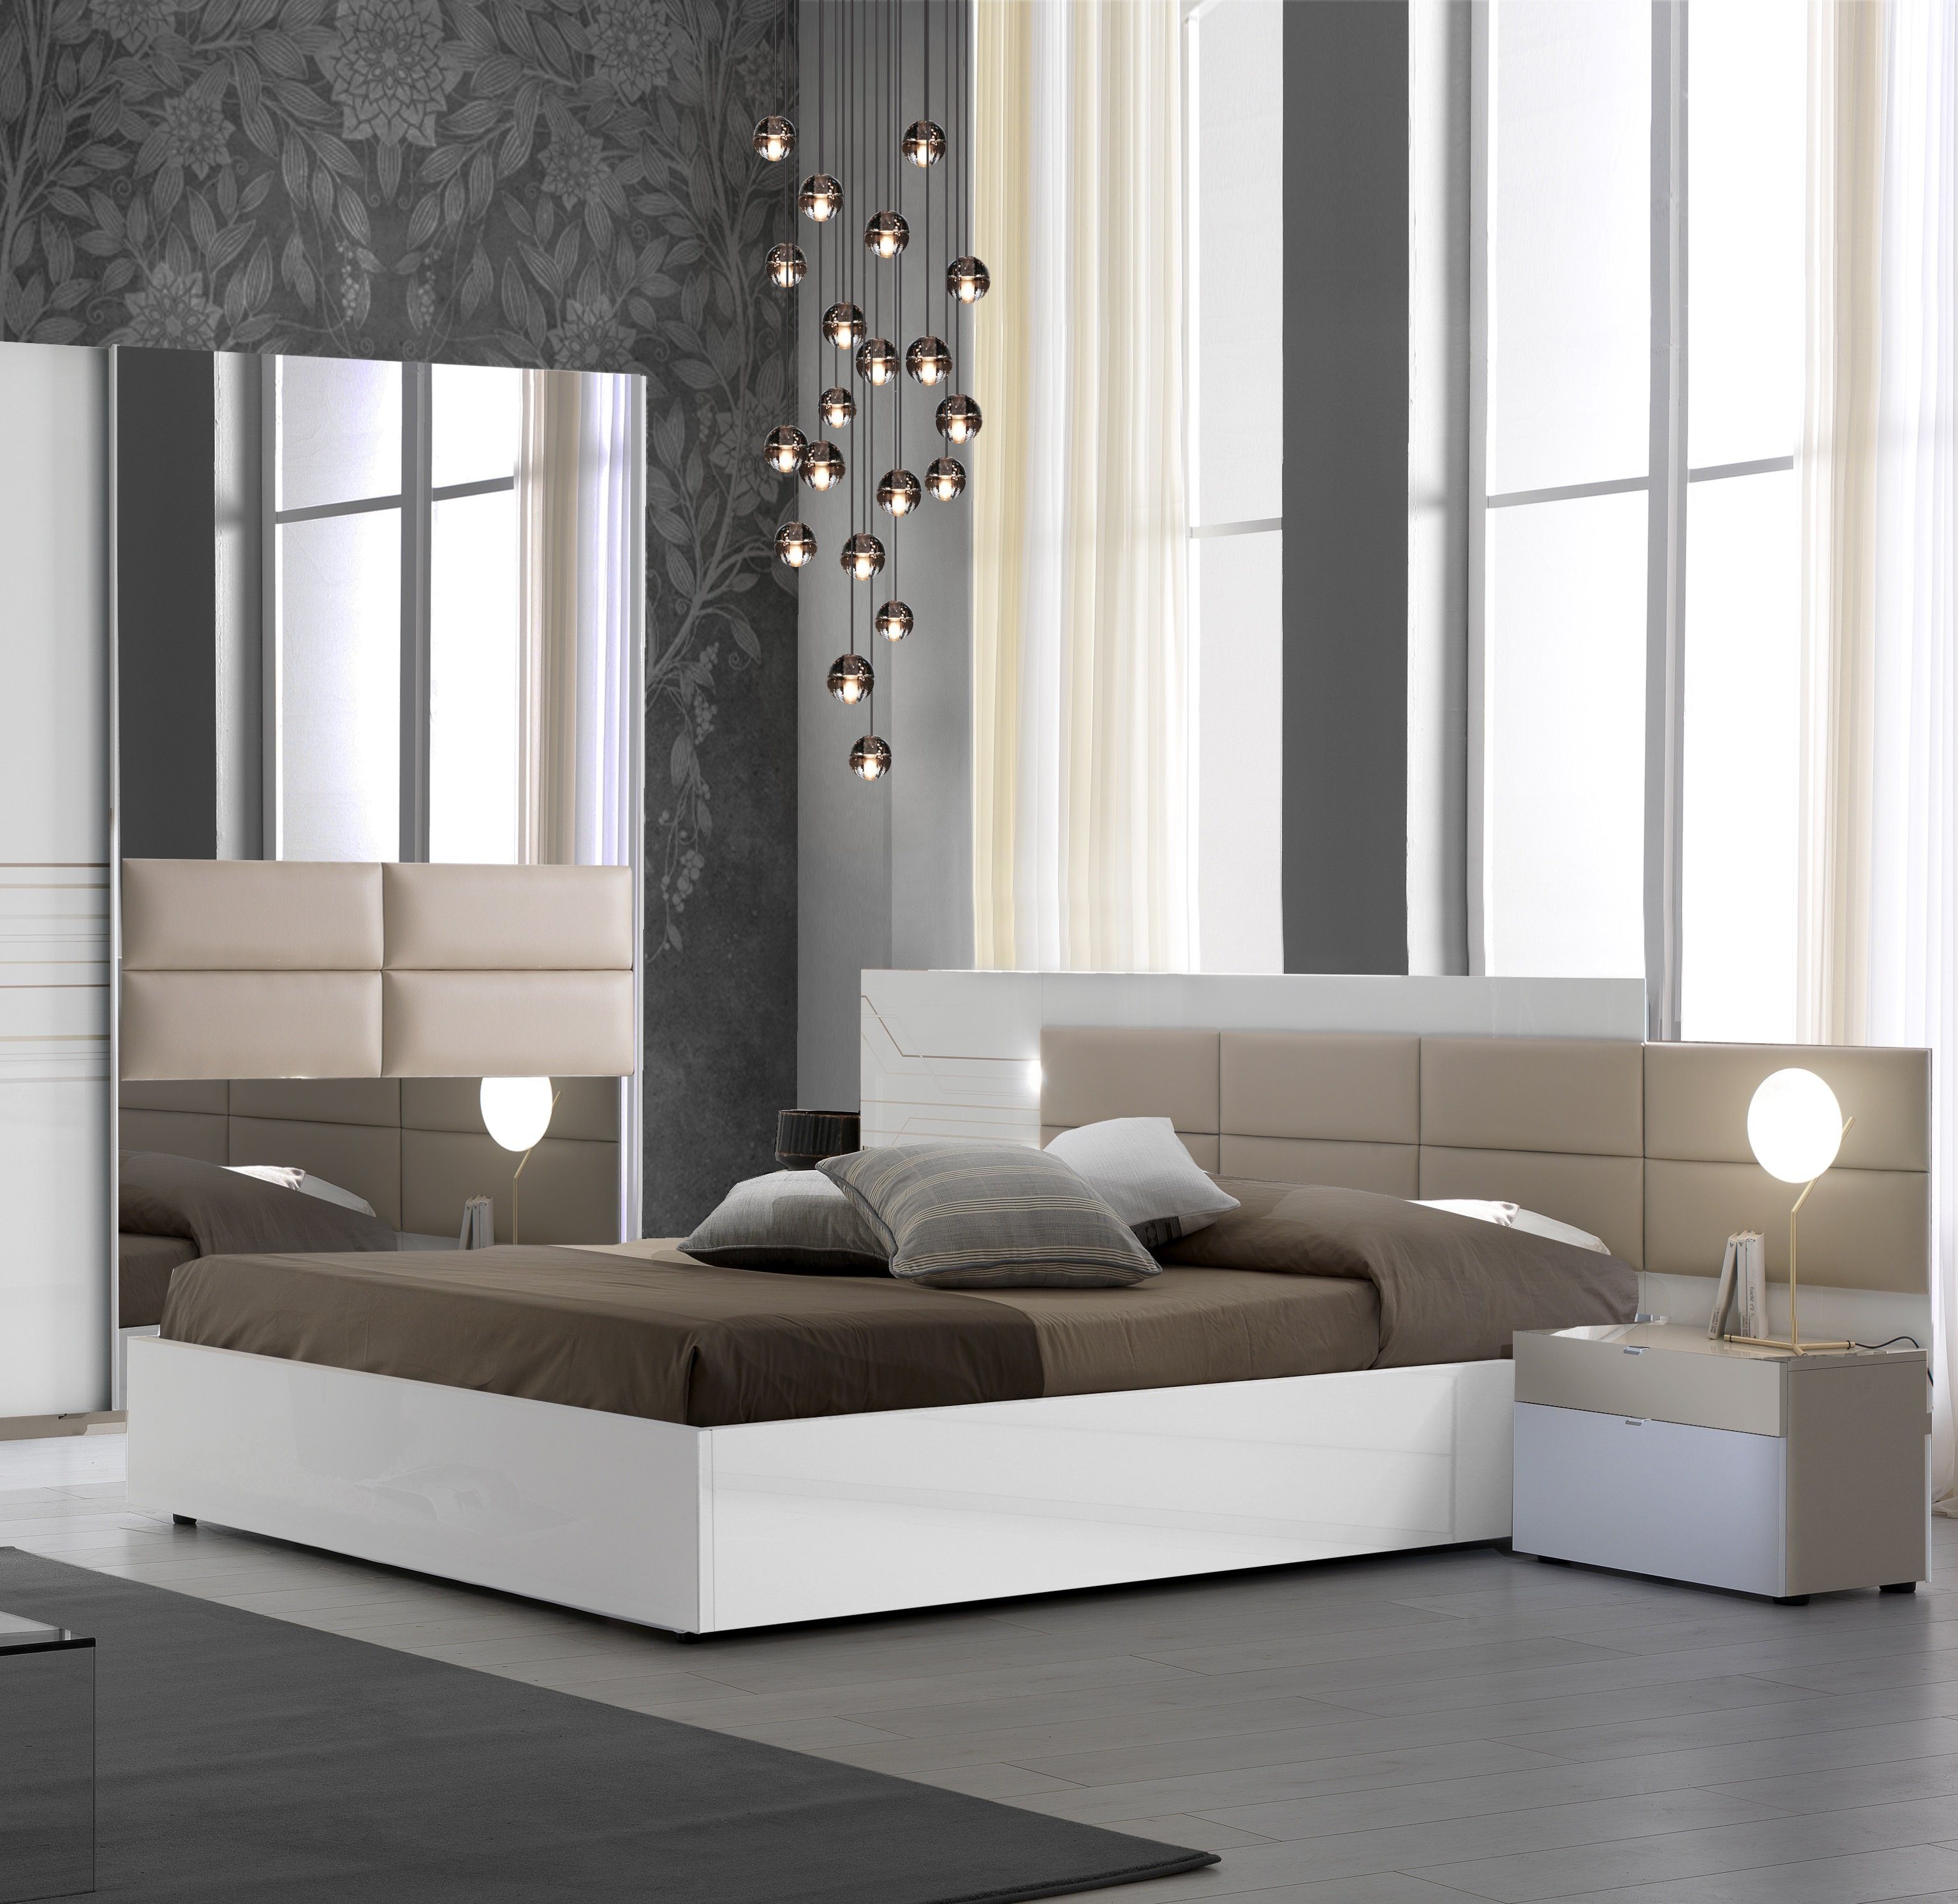 Interdesign24 Bettanlage Luana, (bestehend aus Bett in versch. Größen und 2  Nachtkommoden, inkl. Lattenrost), in Weiß/Beige